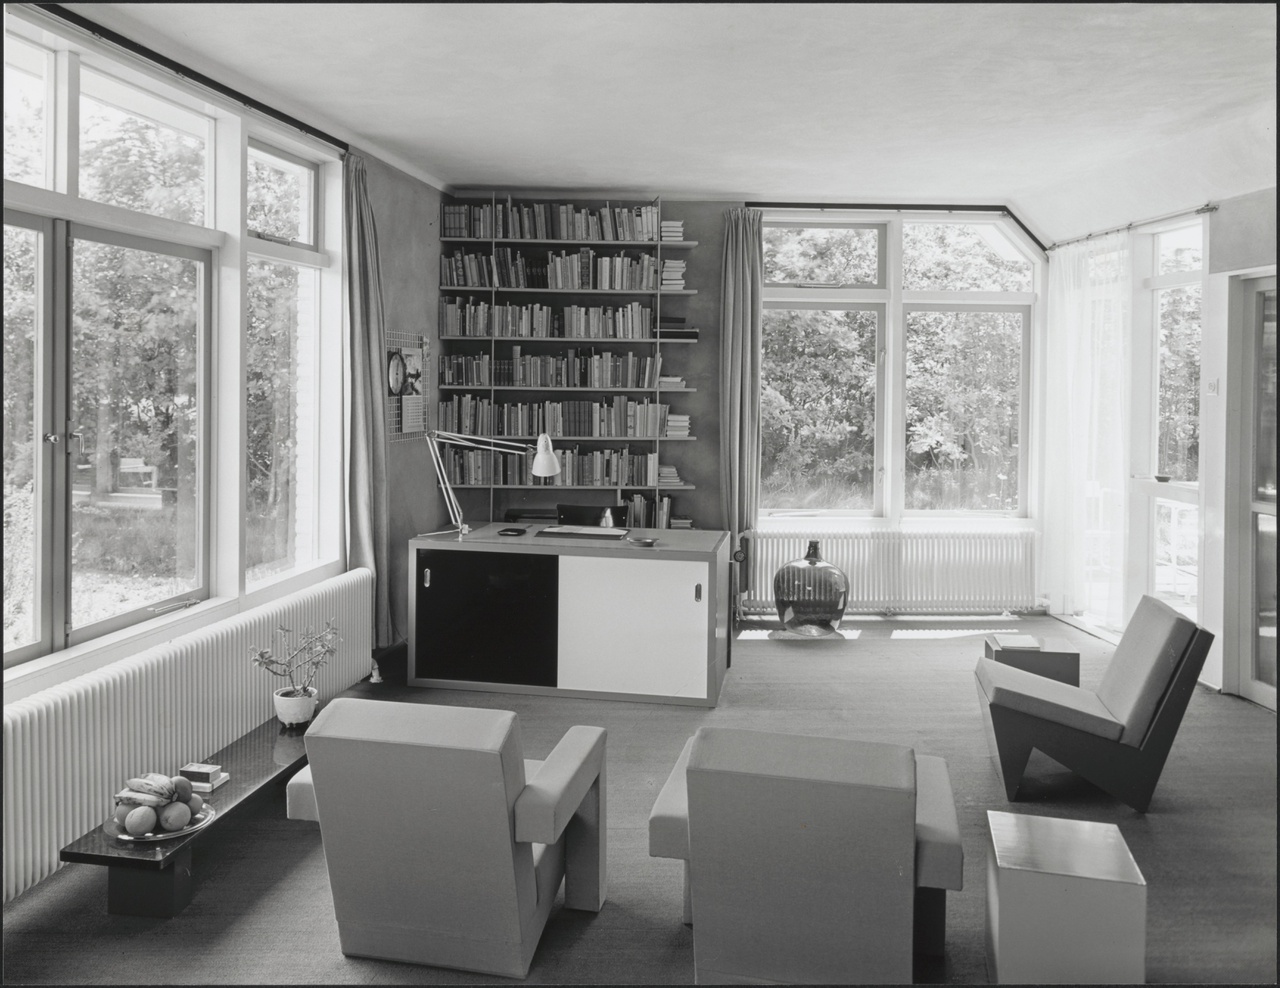 Afbeelding van woning Max, interieur zitkamer met bureauhoek, ca.1952